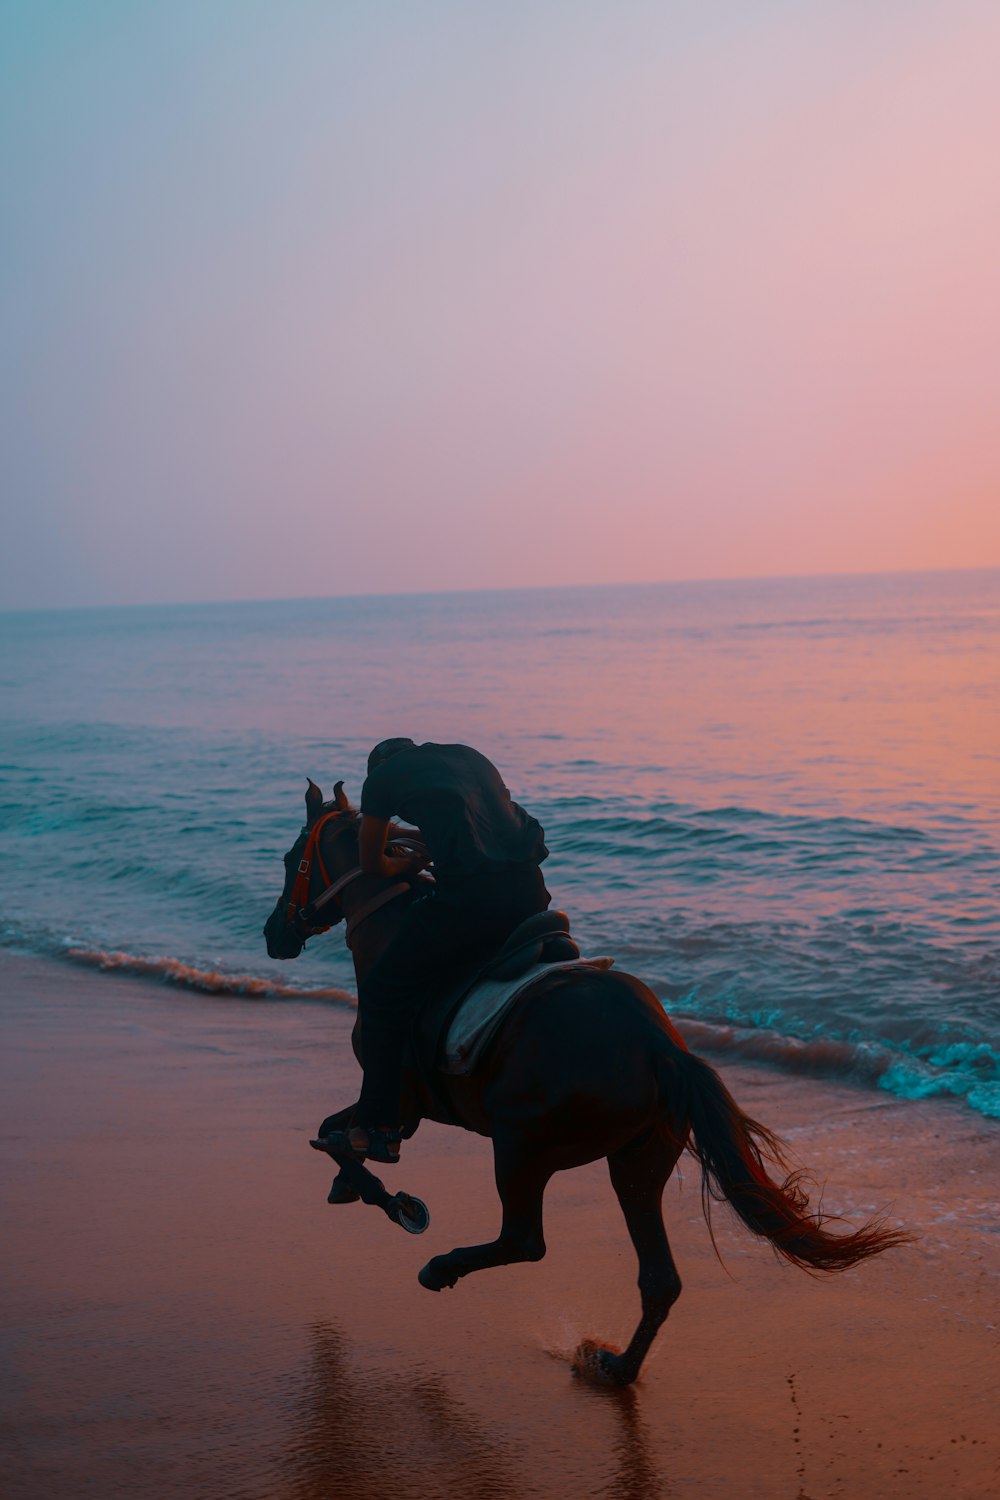 una persona montando a caballo en una playa